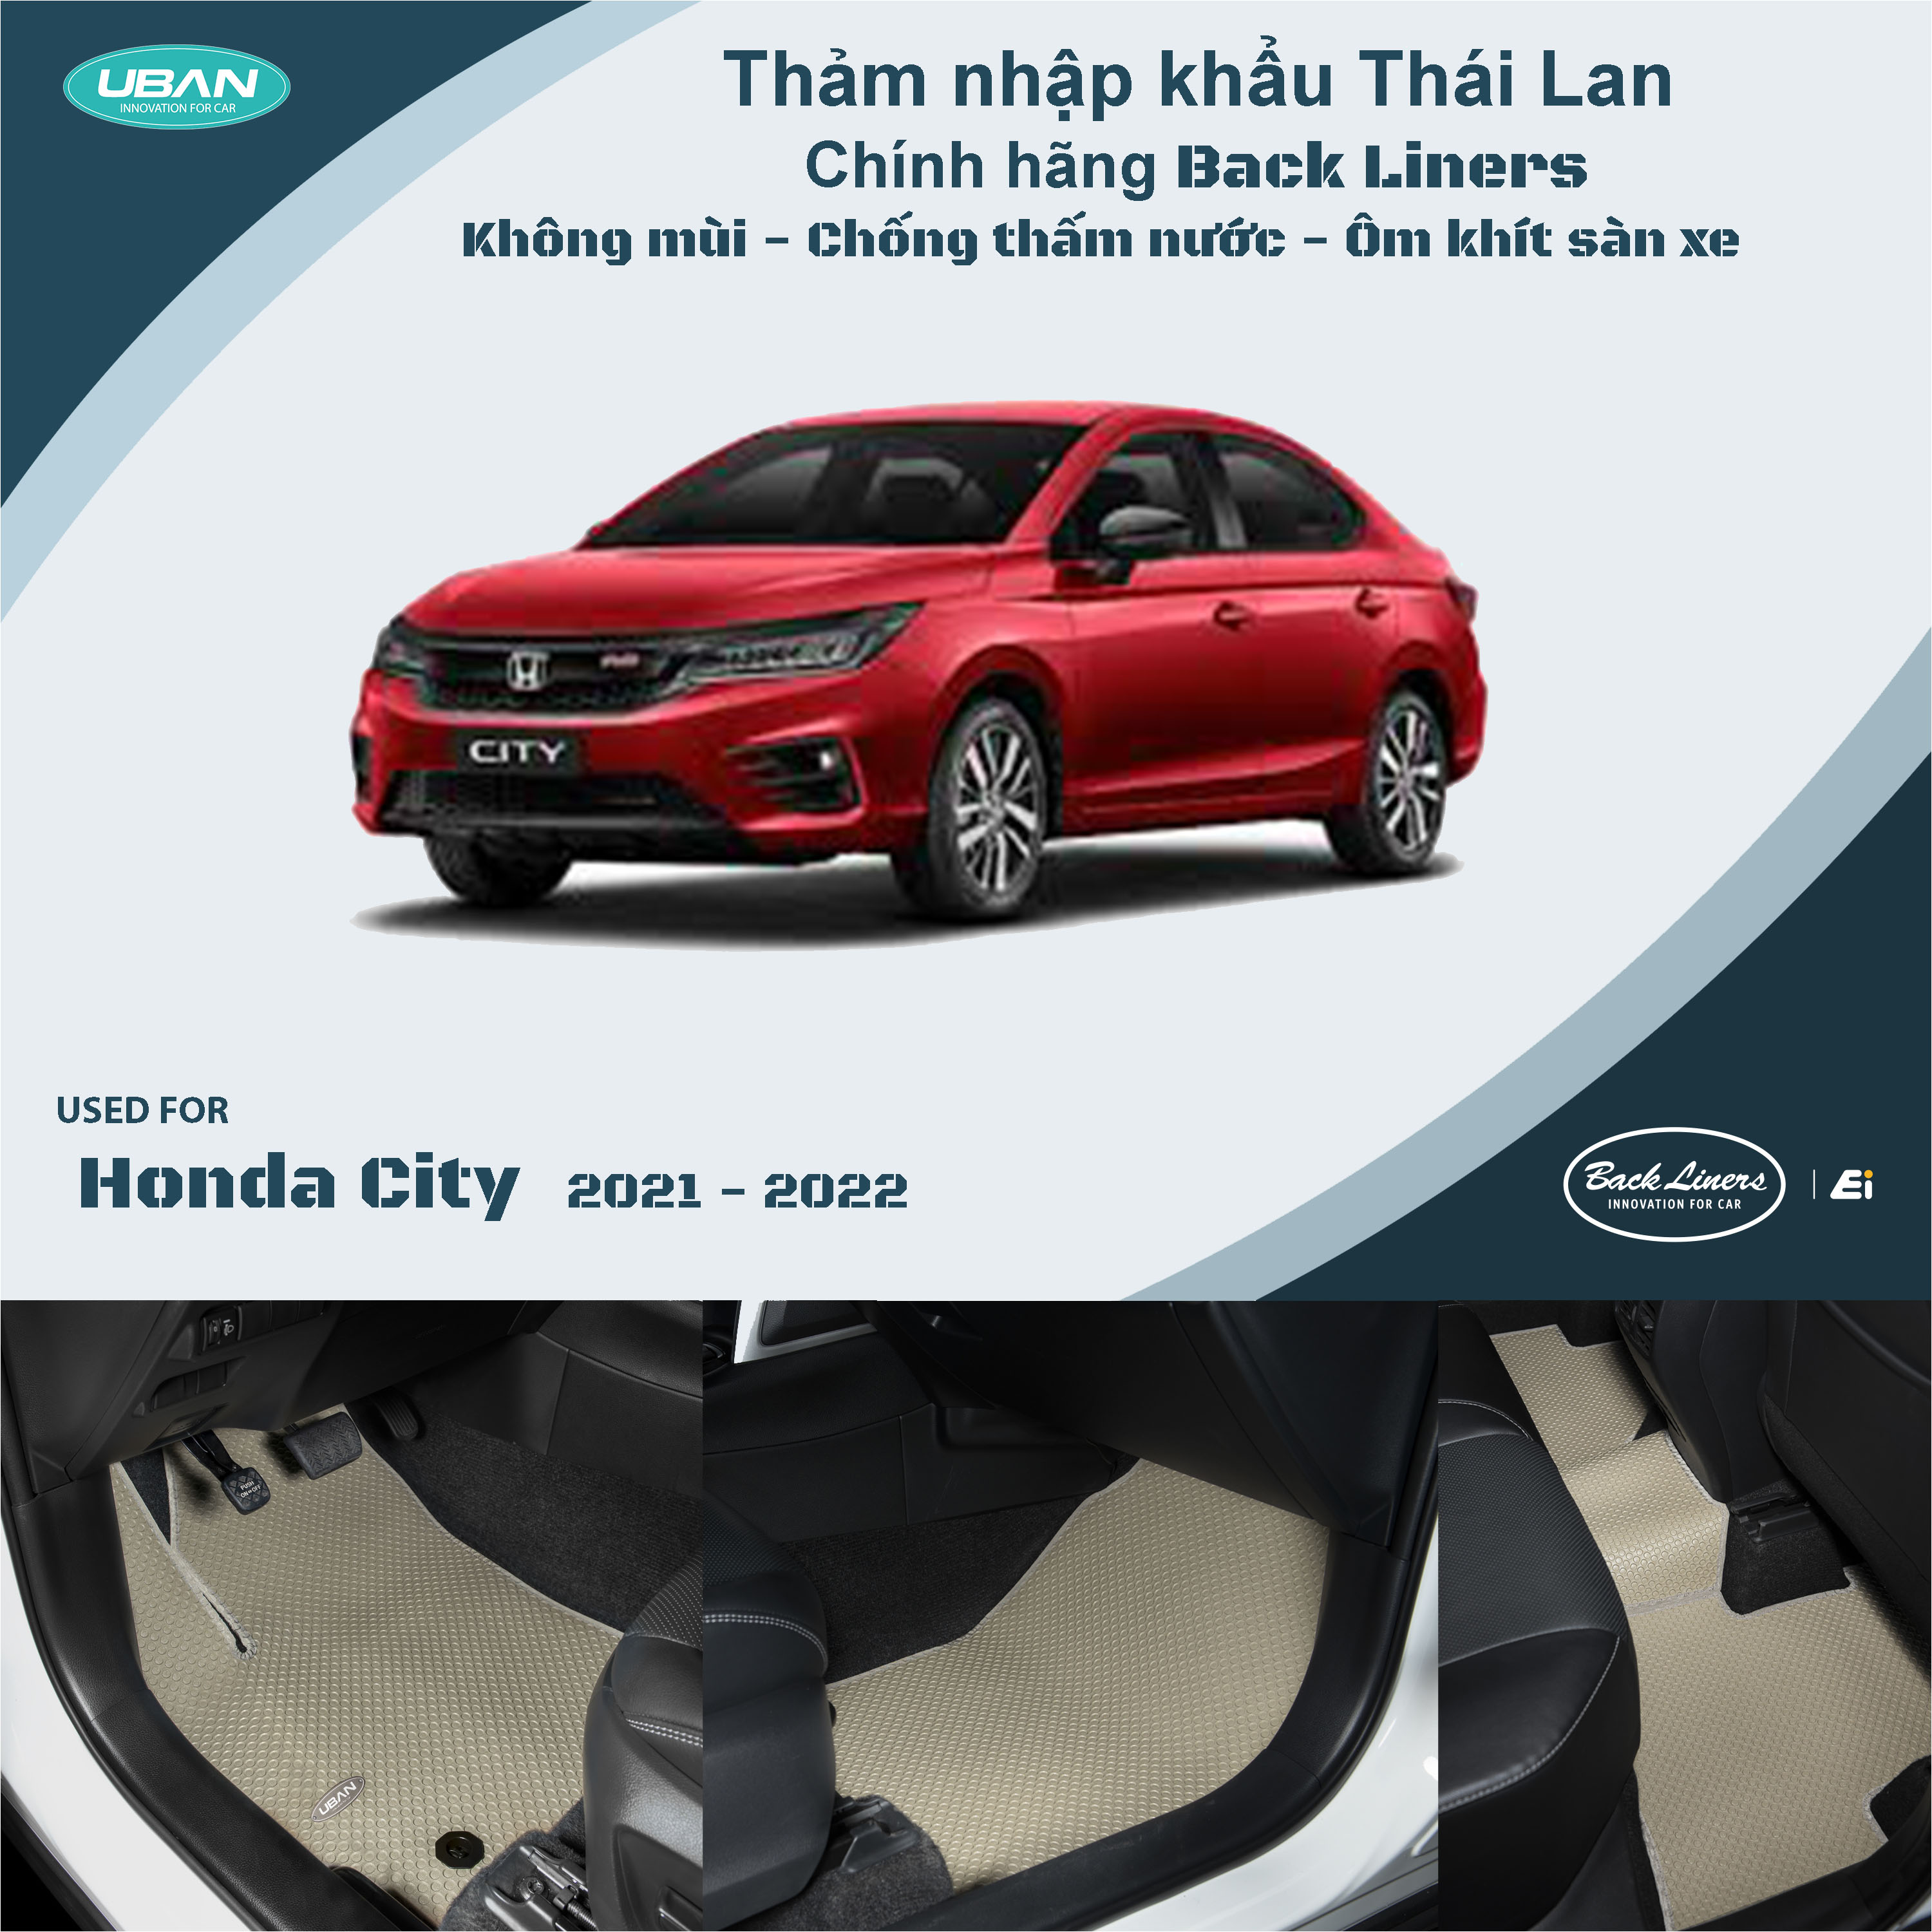 Giá lăn bánh Honda City 2021 tại Việt Nam  YouTube